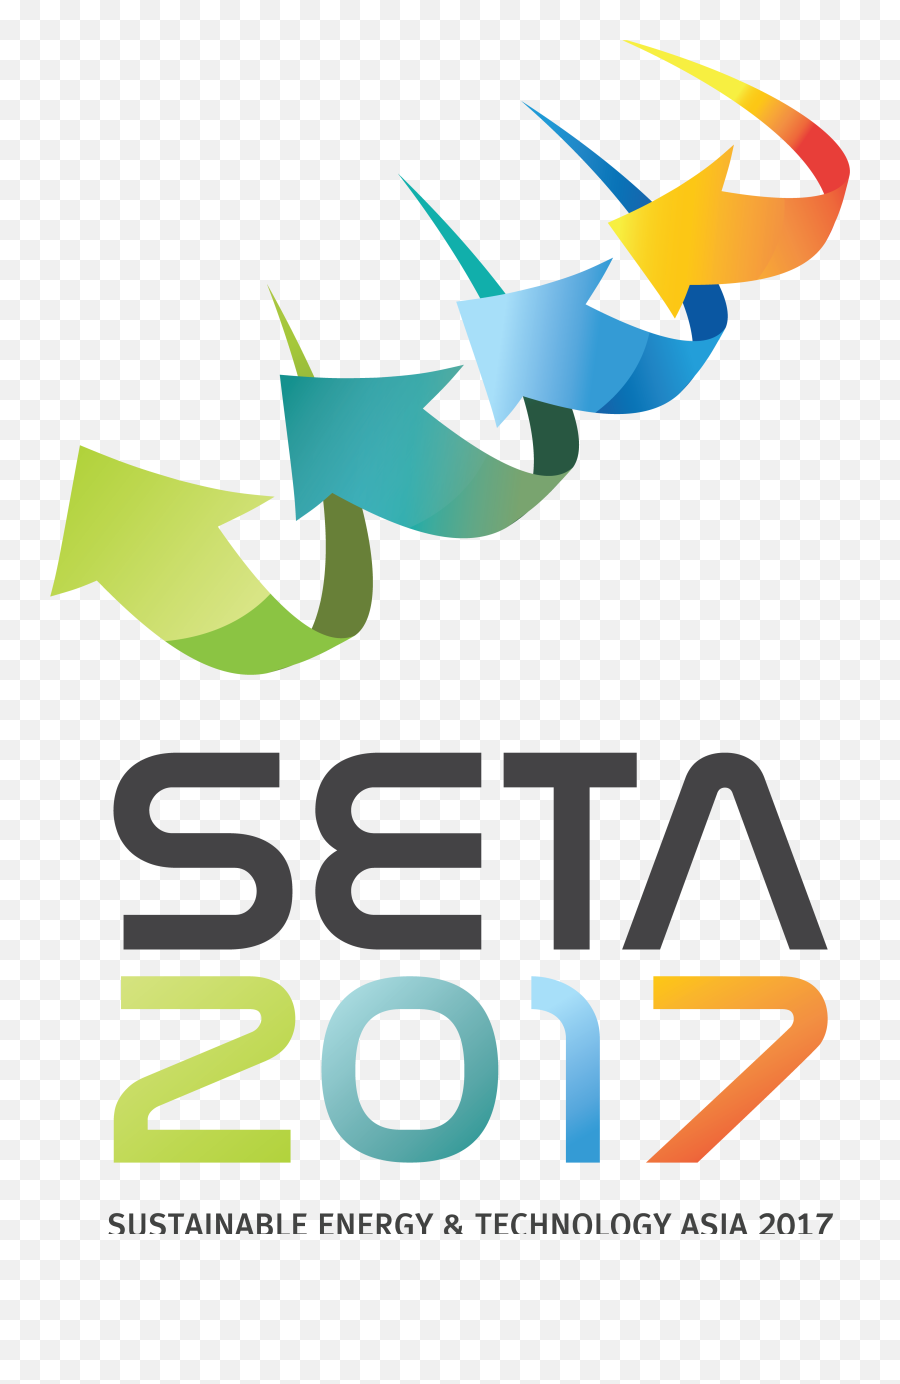 Seta 2017 Full Size Png Download Seekpng - Seta 2016,Seta Png